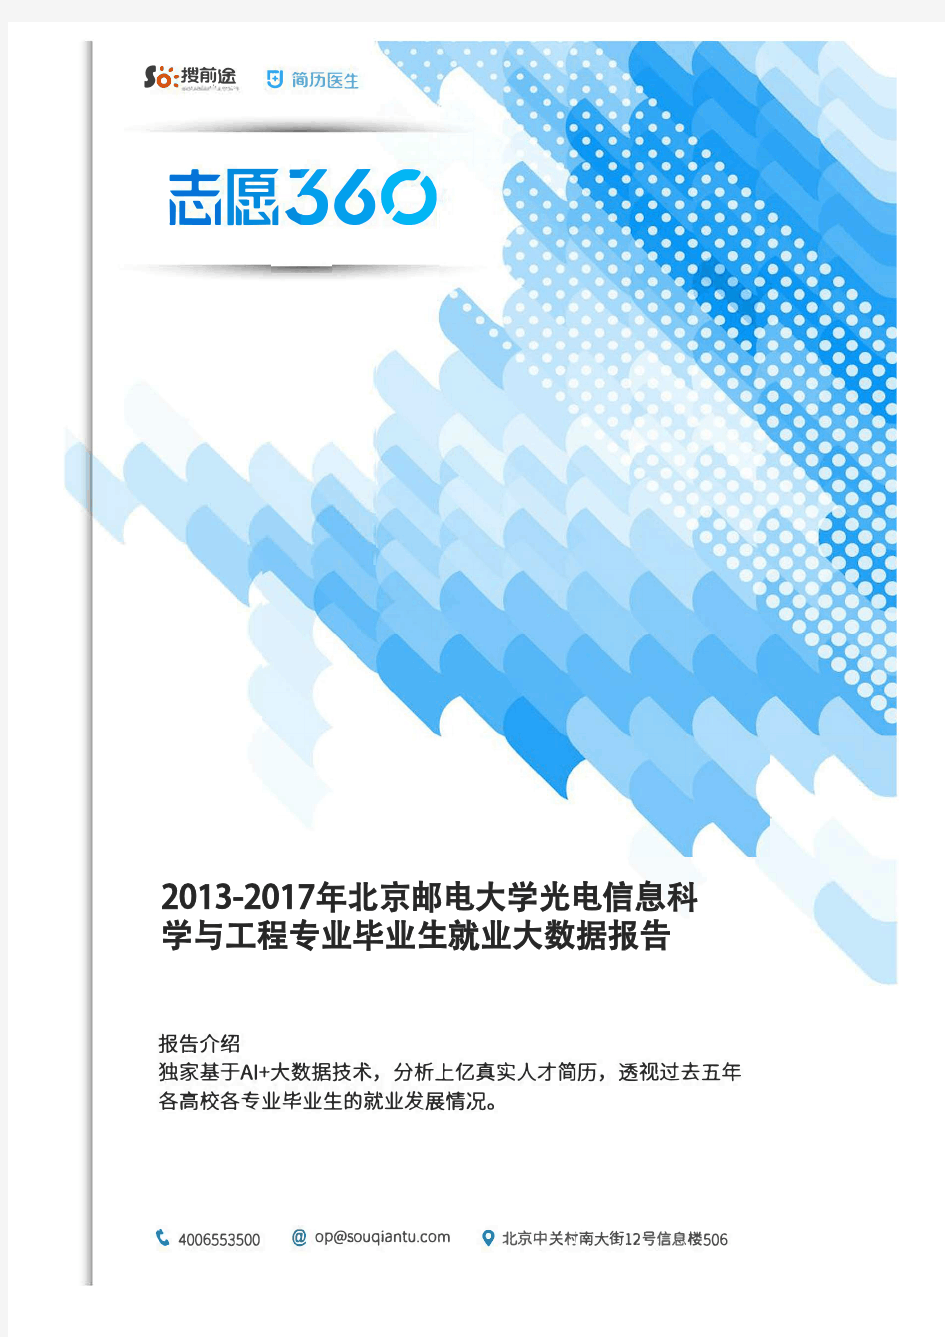 2013-2017年北京邮电大学光电信息科学与工程专业毕业生就业大数据报告